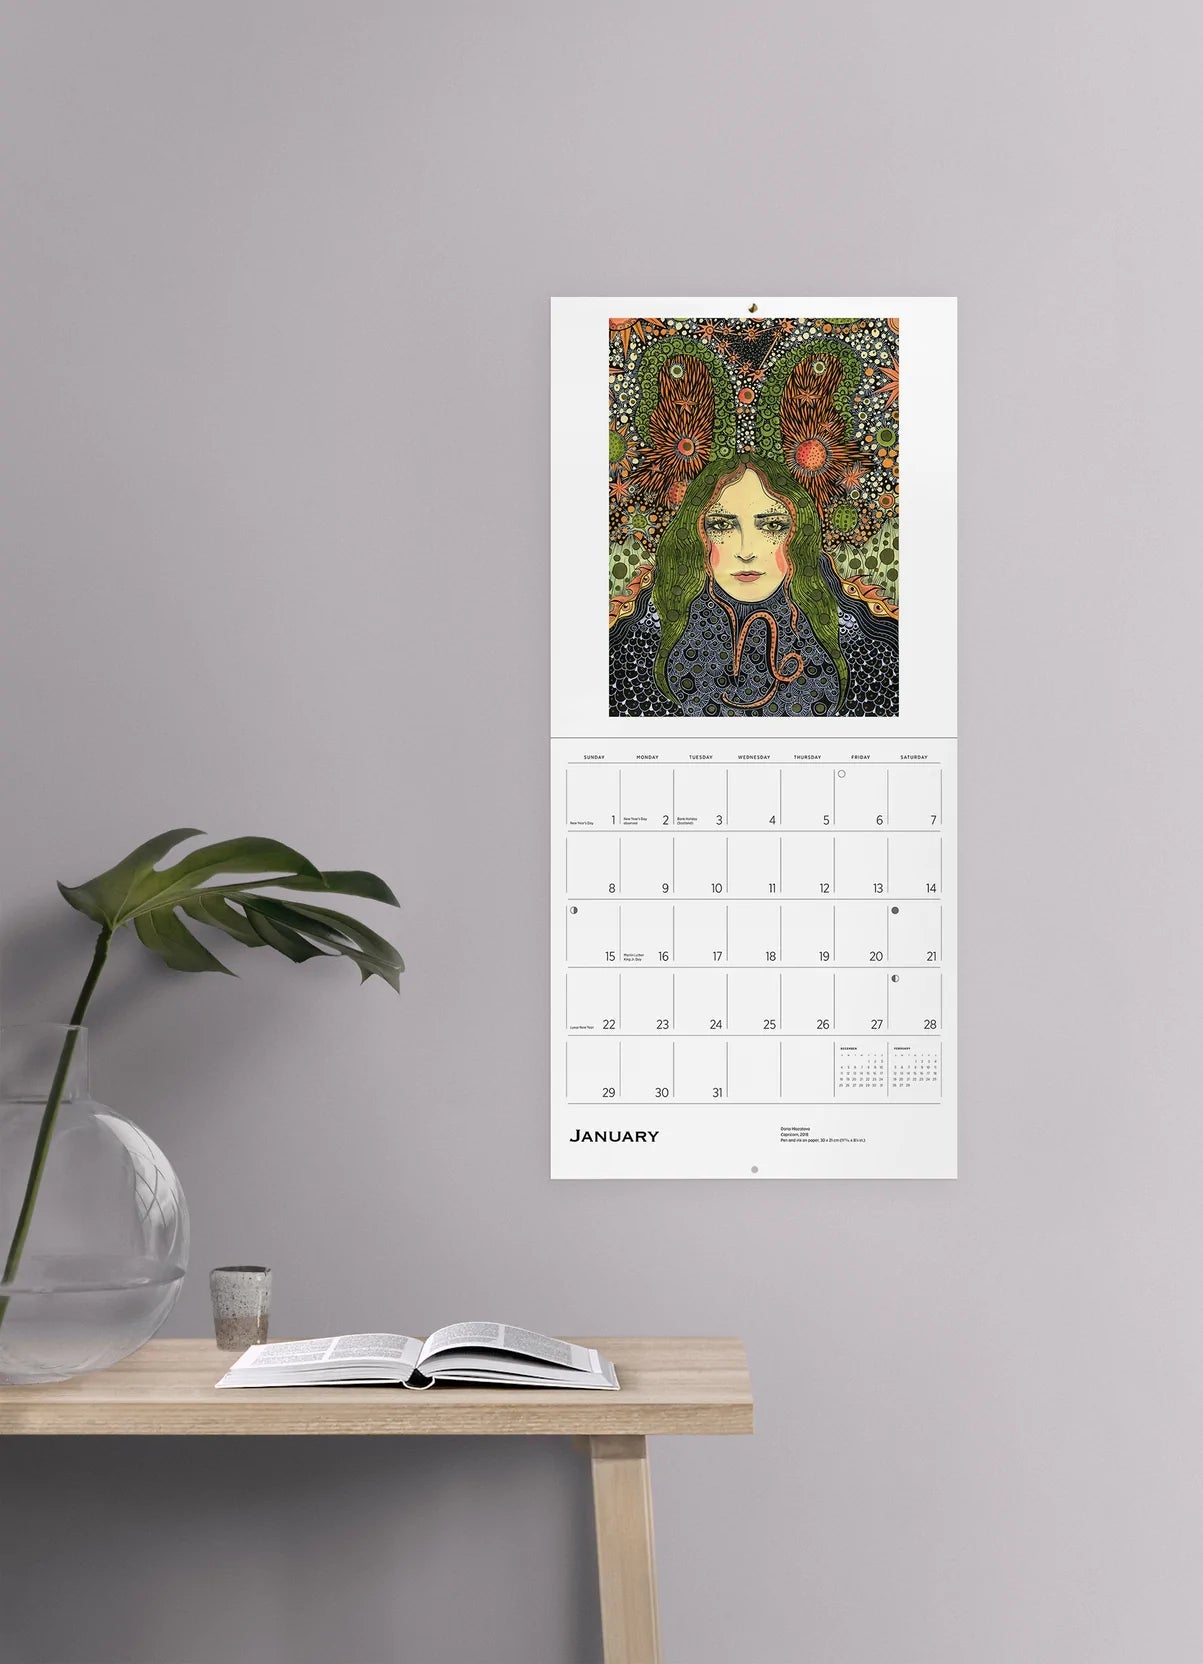 2023 Zodiac: Daria Hlazatova - Square Wall Calendar